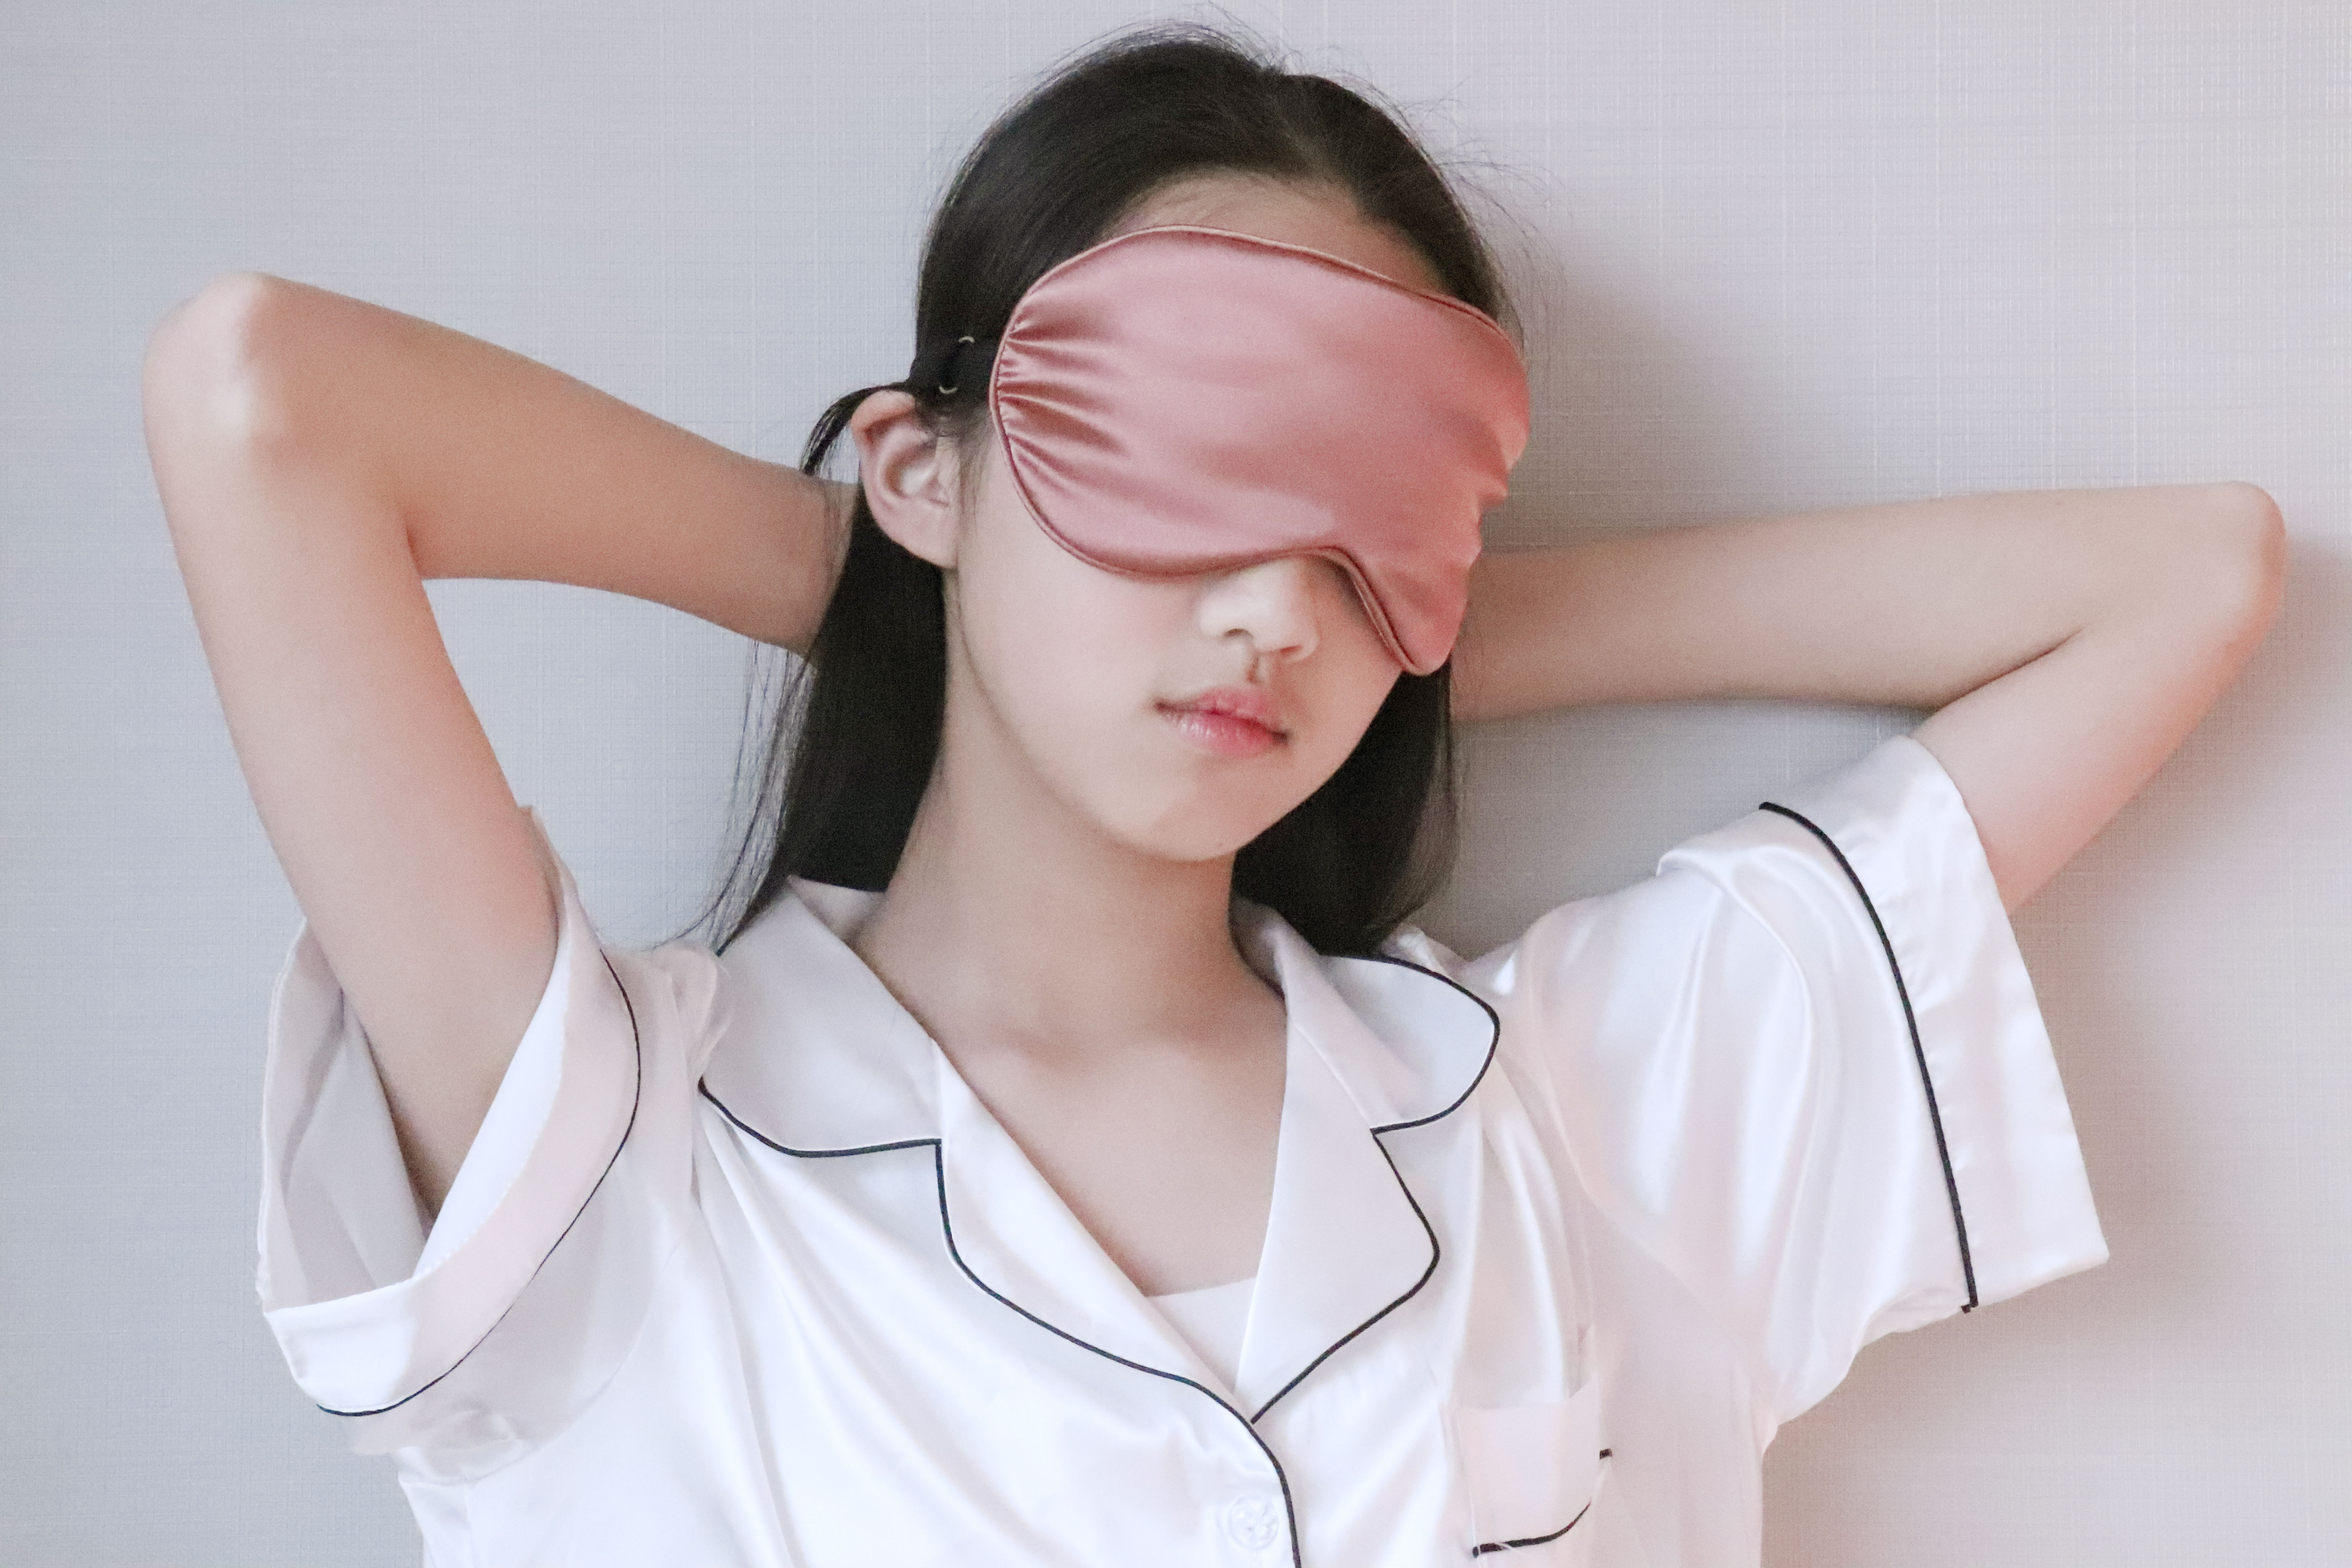 سلک ماسک آپ کو بہتر سونے میں کس طرح مدد کرسکتا ہے۔